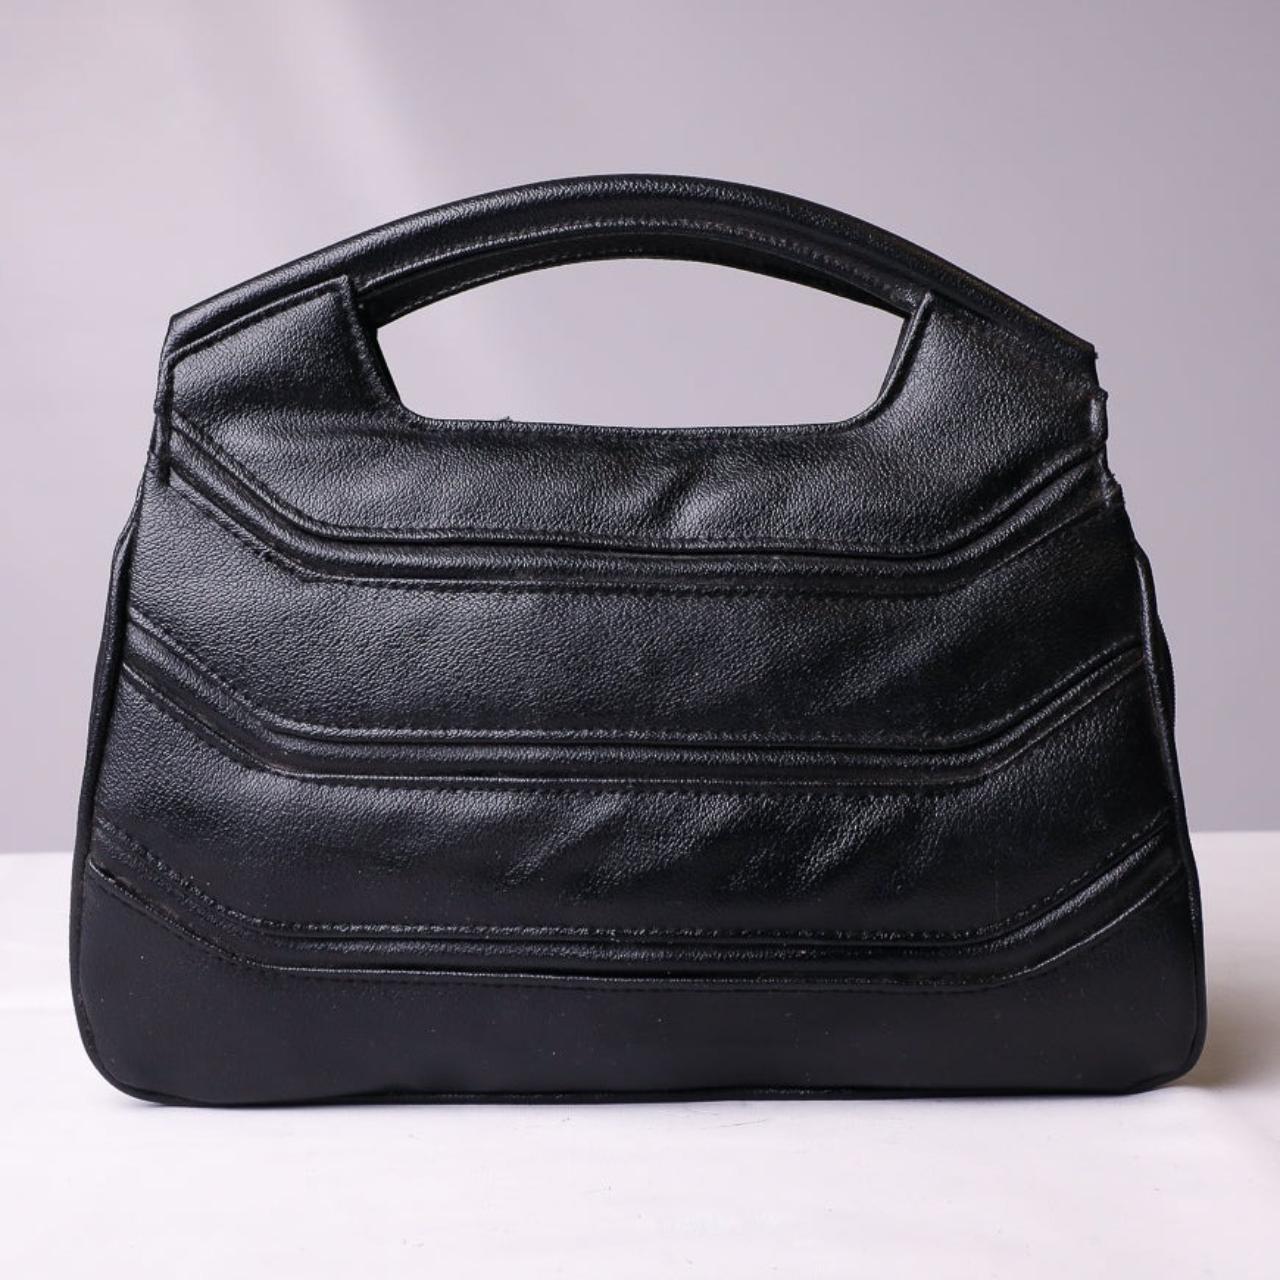 Vintage Unbranded Leather Handbag in Black• Estimate - Depop